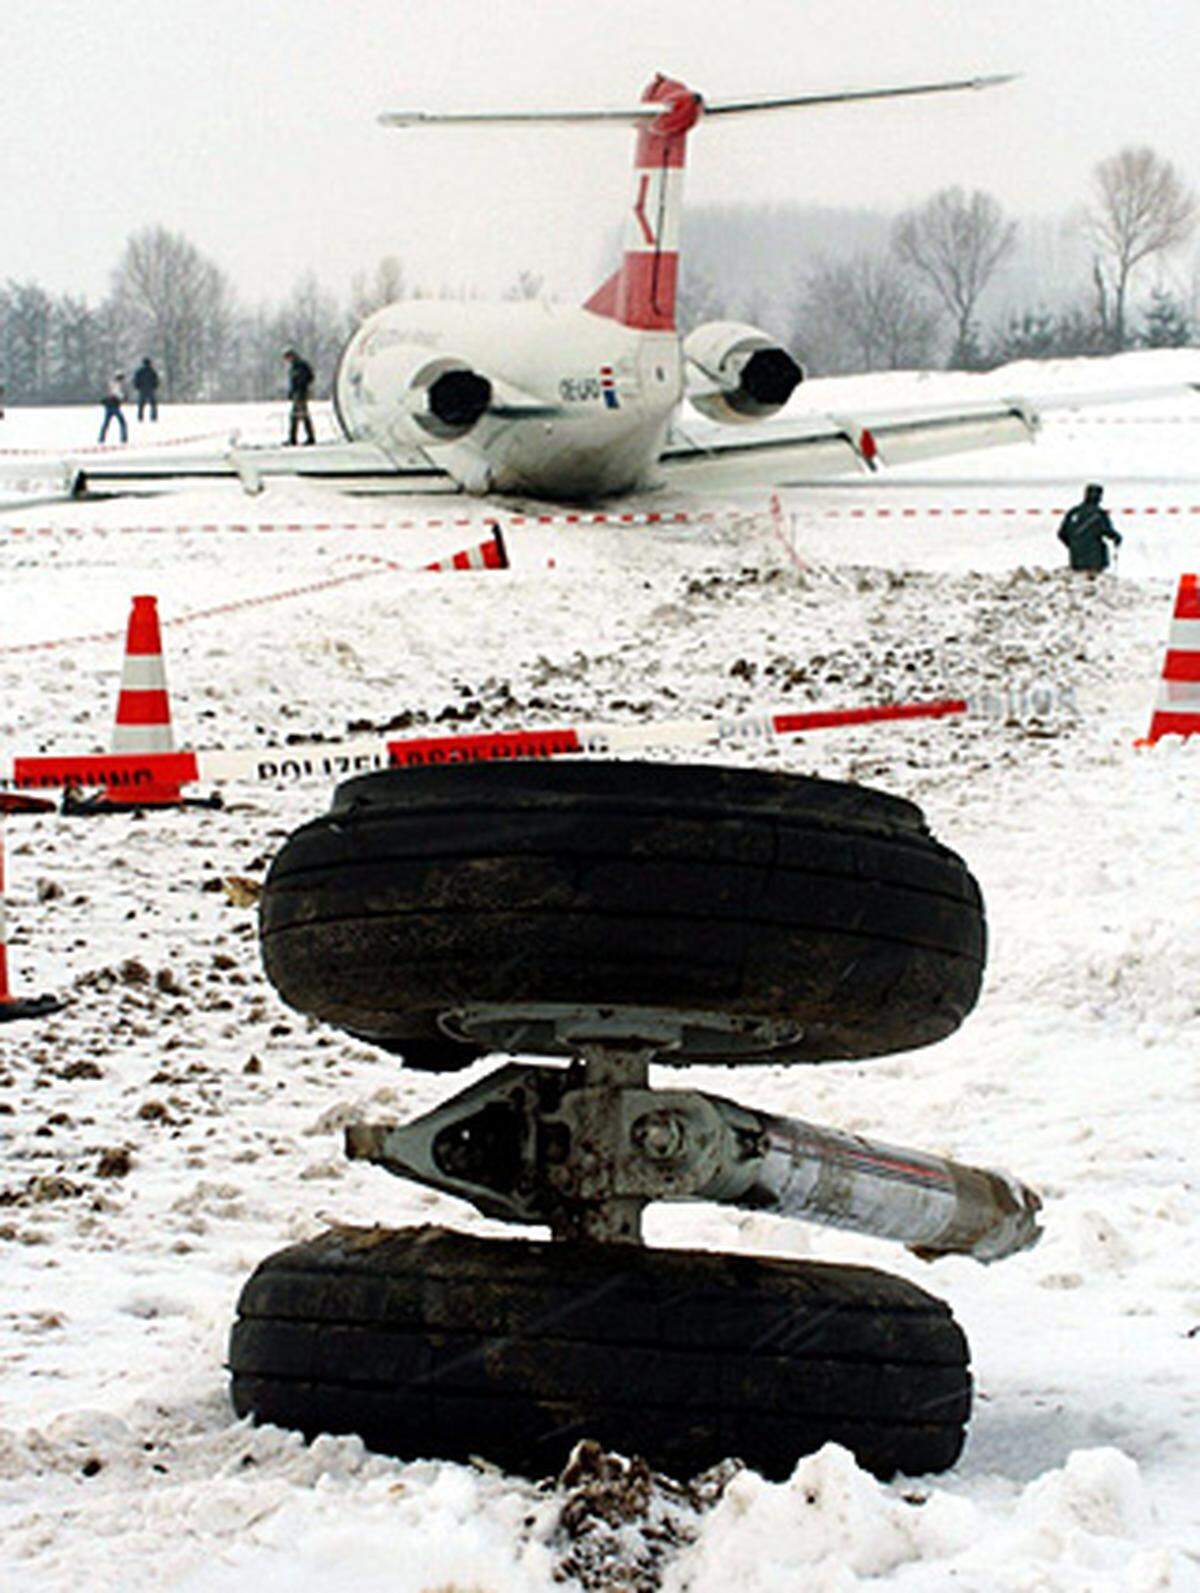 Der AUA-Pilot des Fluges OS 111 mit 28 Passagieren und vier Crew-Mitgliedern hatte sich wegen Triebwerksproblemen zur Notlandung in einem Feld bei Erding entschlossen. Niemand wurde ernstlich verletzt.